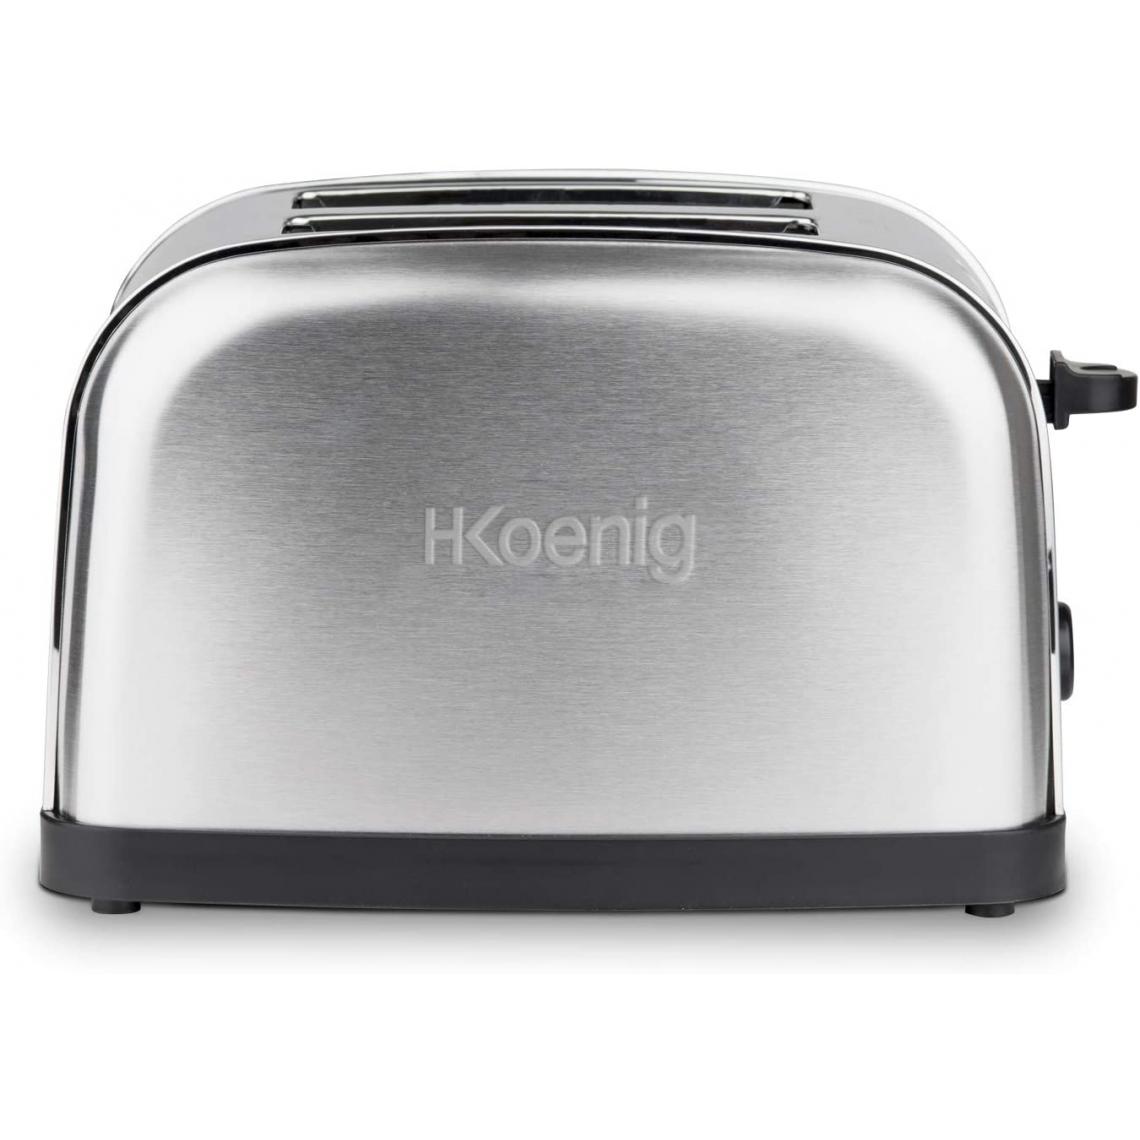 H.Koenig - grille pain électrique avec 2 fentes 850W gris noir - Grille-pain